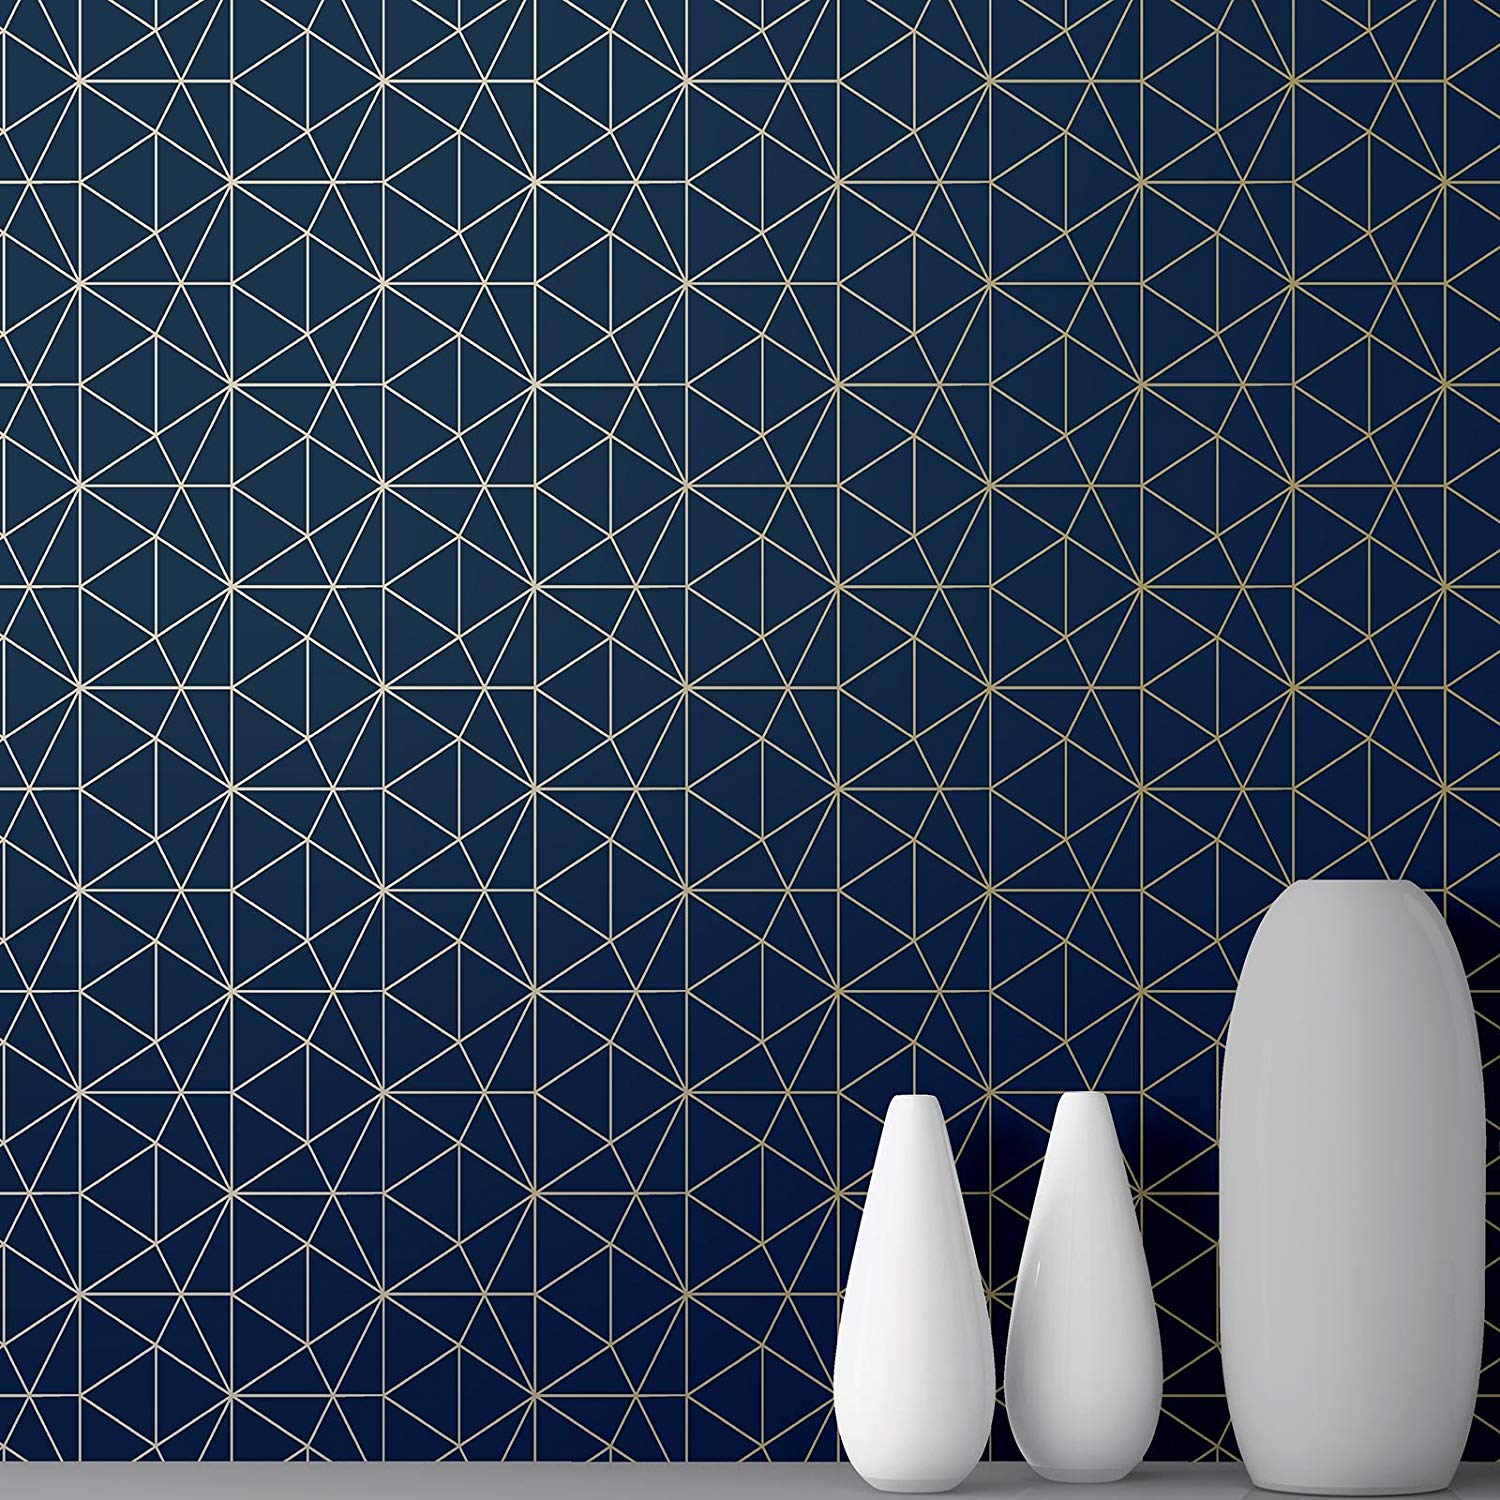 Geometric Wallpaper Dark Blue Gold - 1500x1500 Wallpaper 